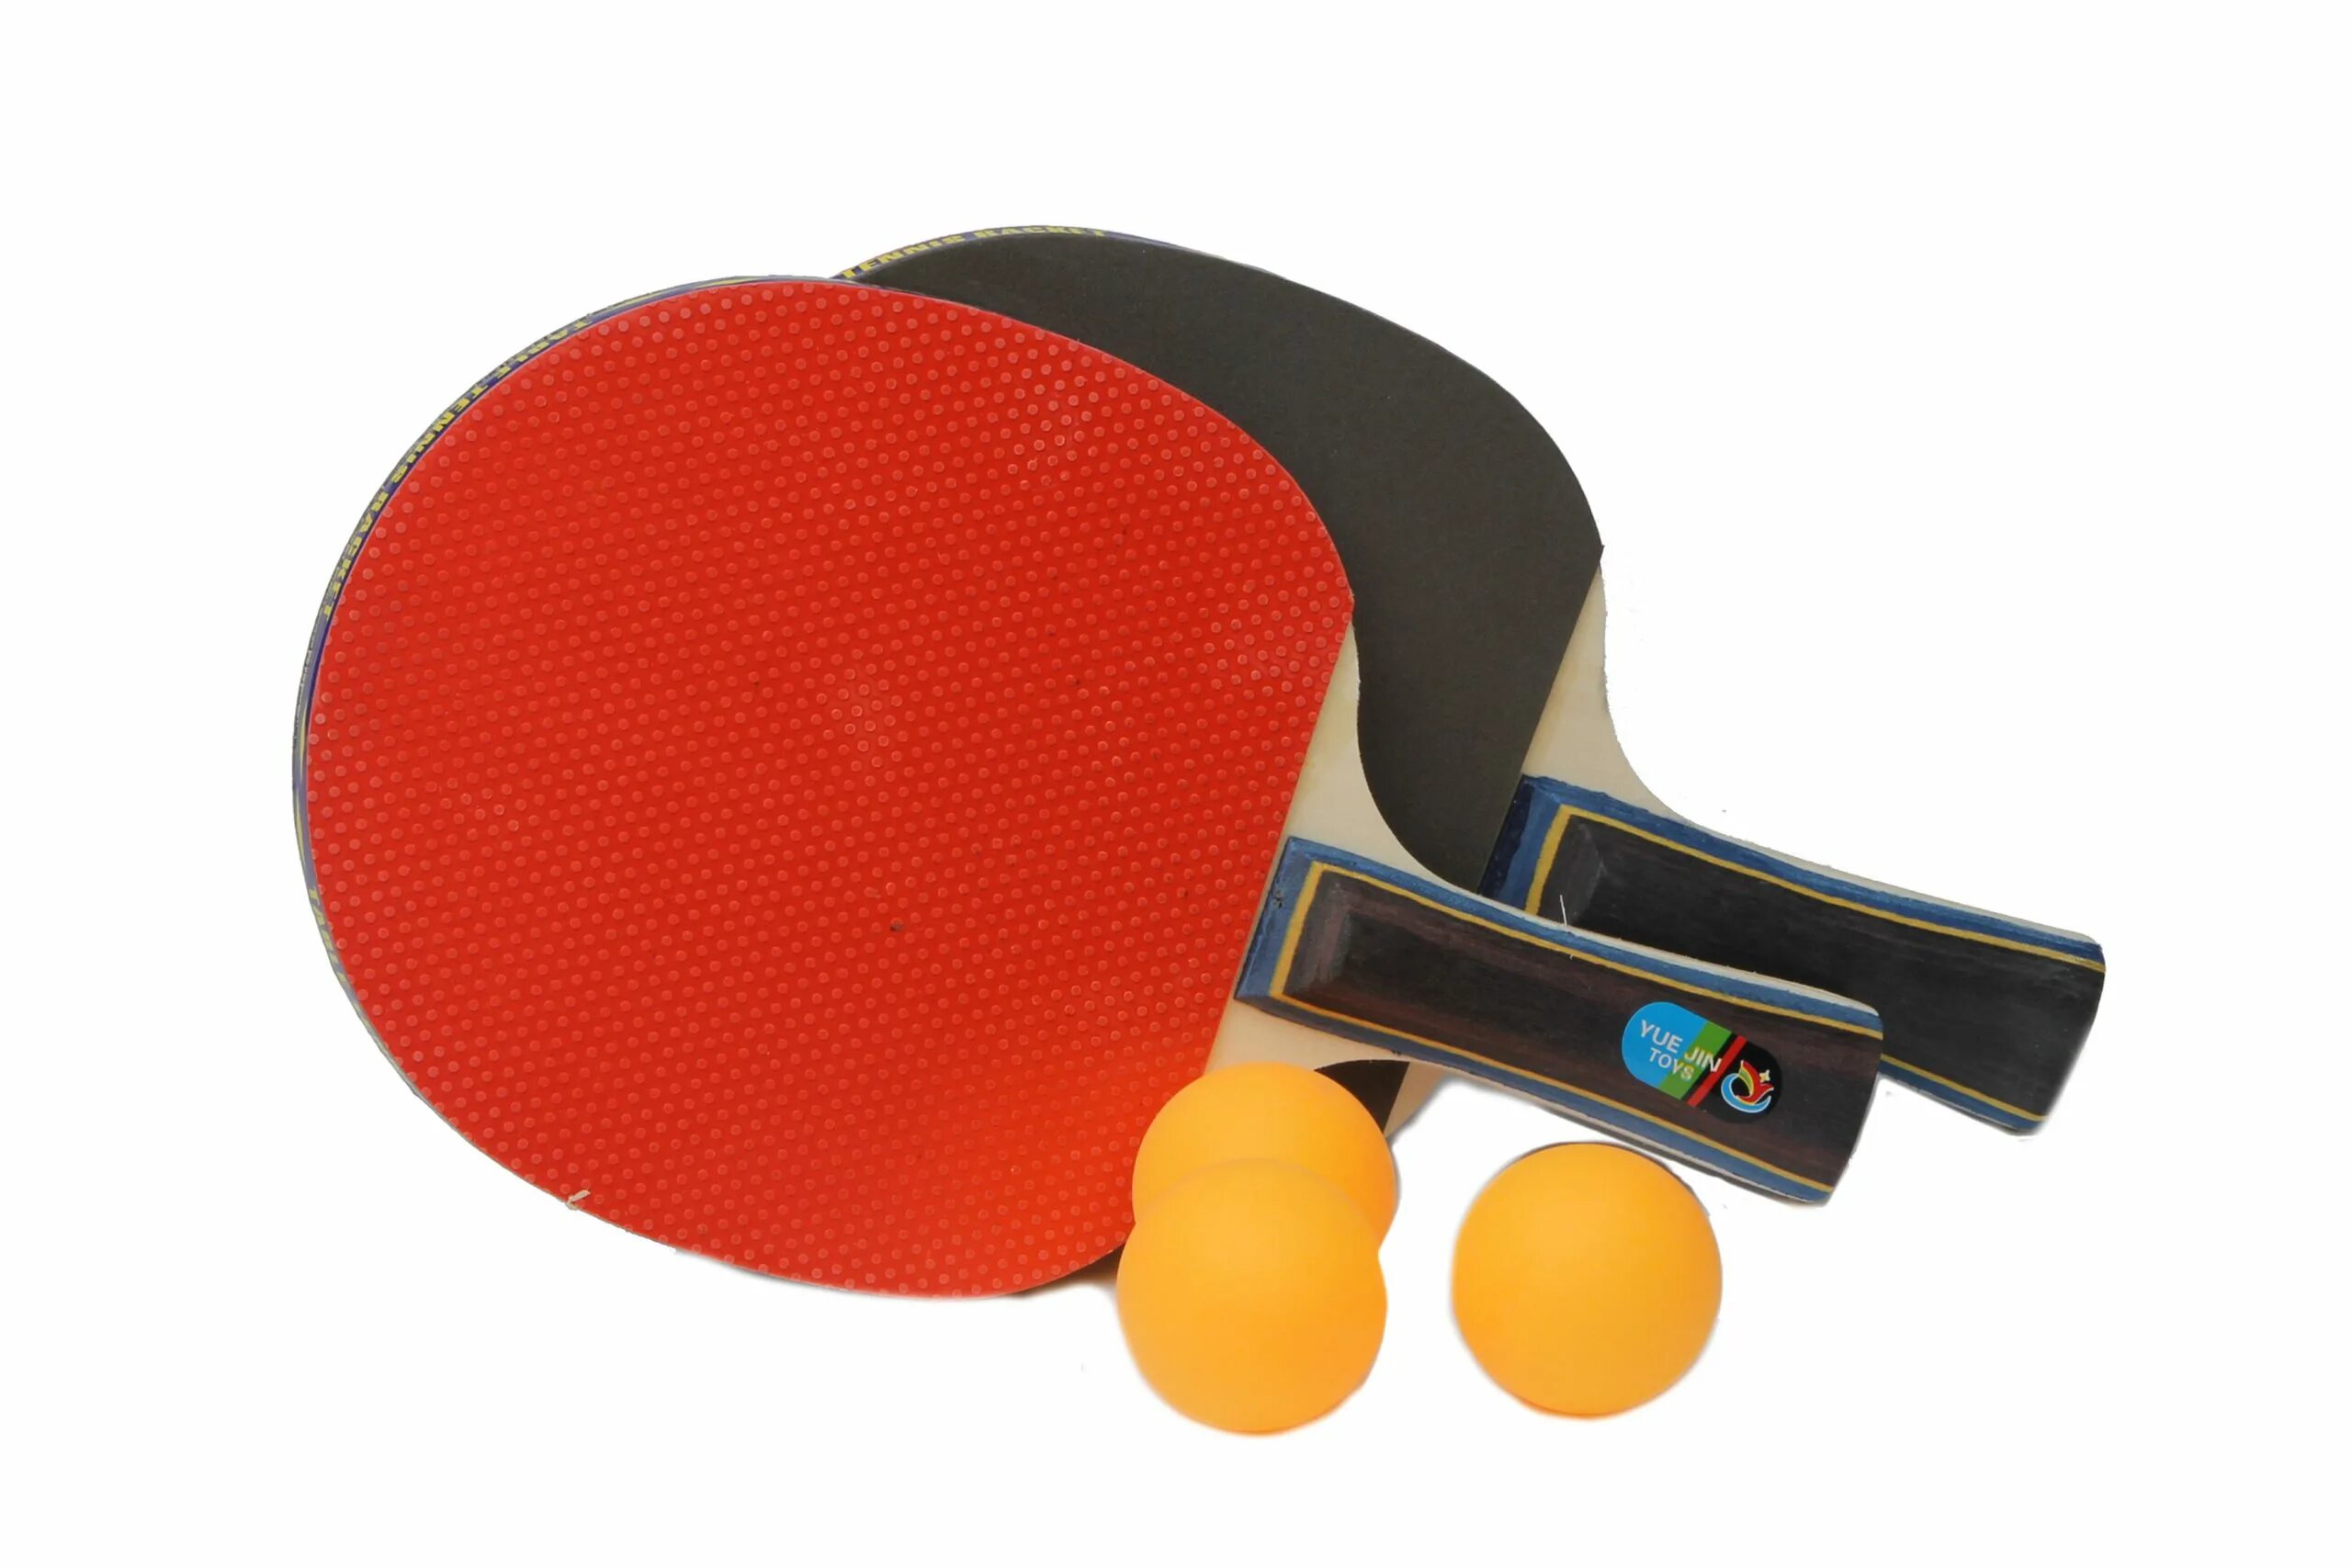 Пинг-понг - HC-058-281. Ping Pong ampeloprasum 7/8 *25 лук. Понг понг каре. Пинг понг ракетка 2d.